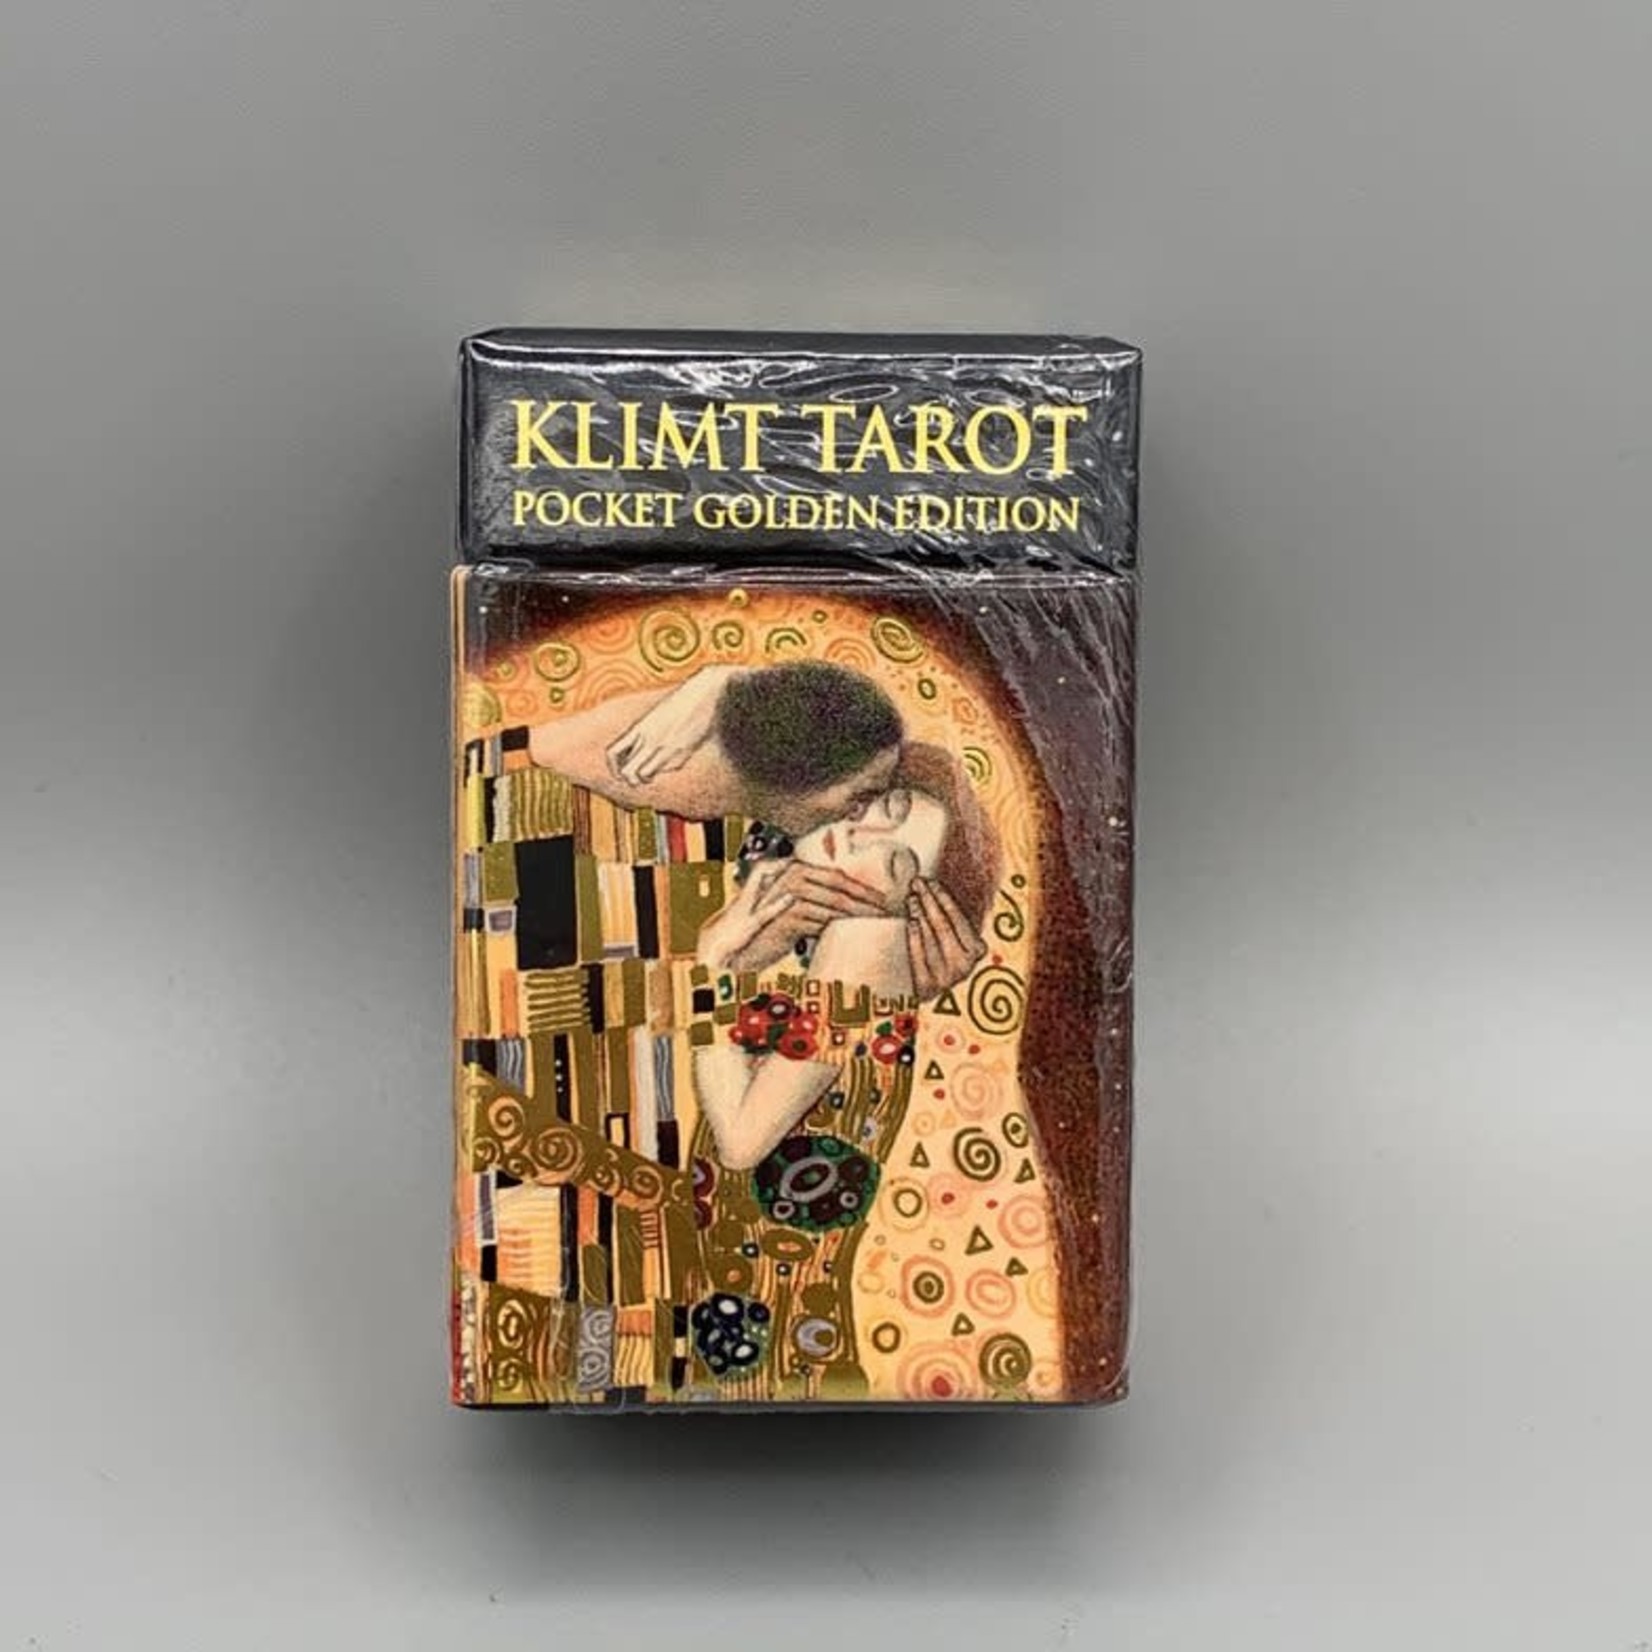 Klimt Tarot, Pocket Golden Edition Artwork by A.A. Atanassov